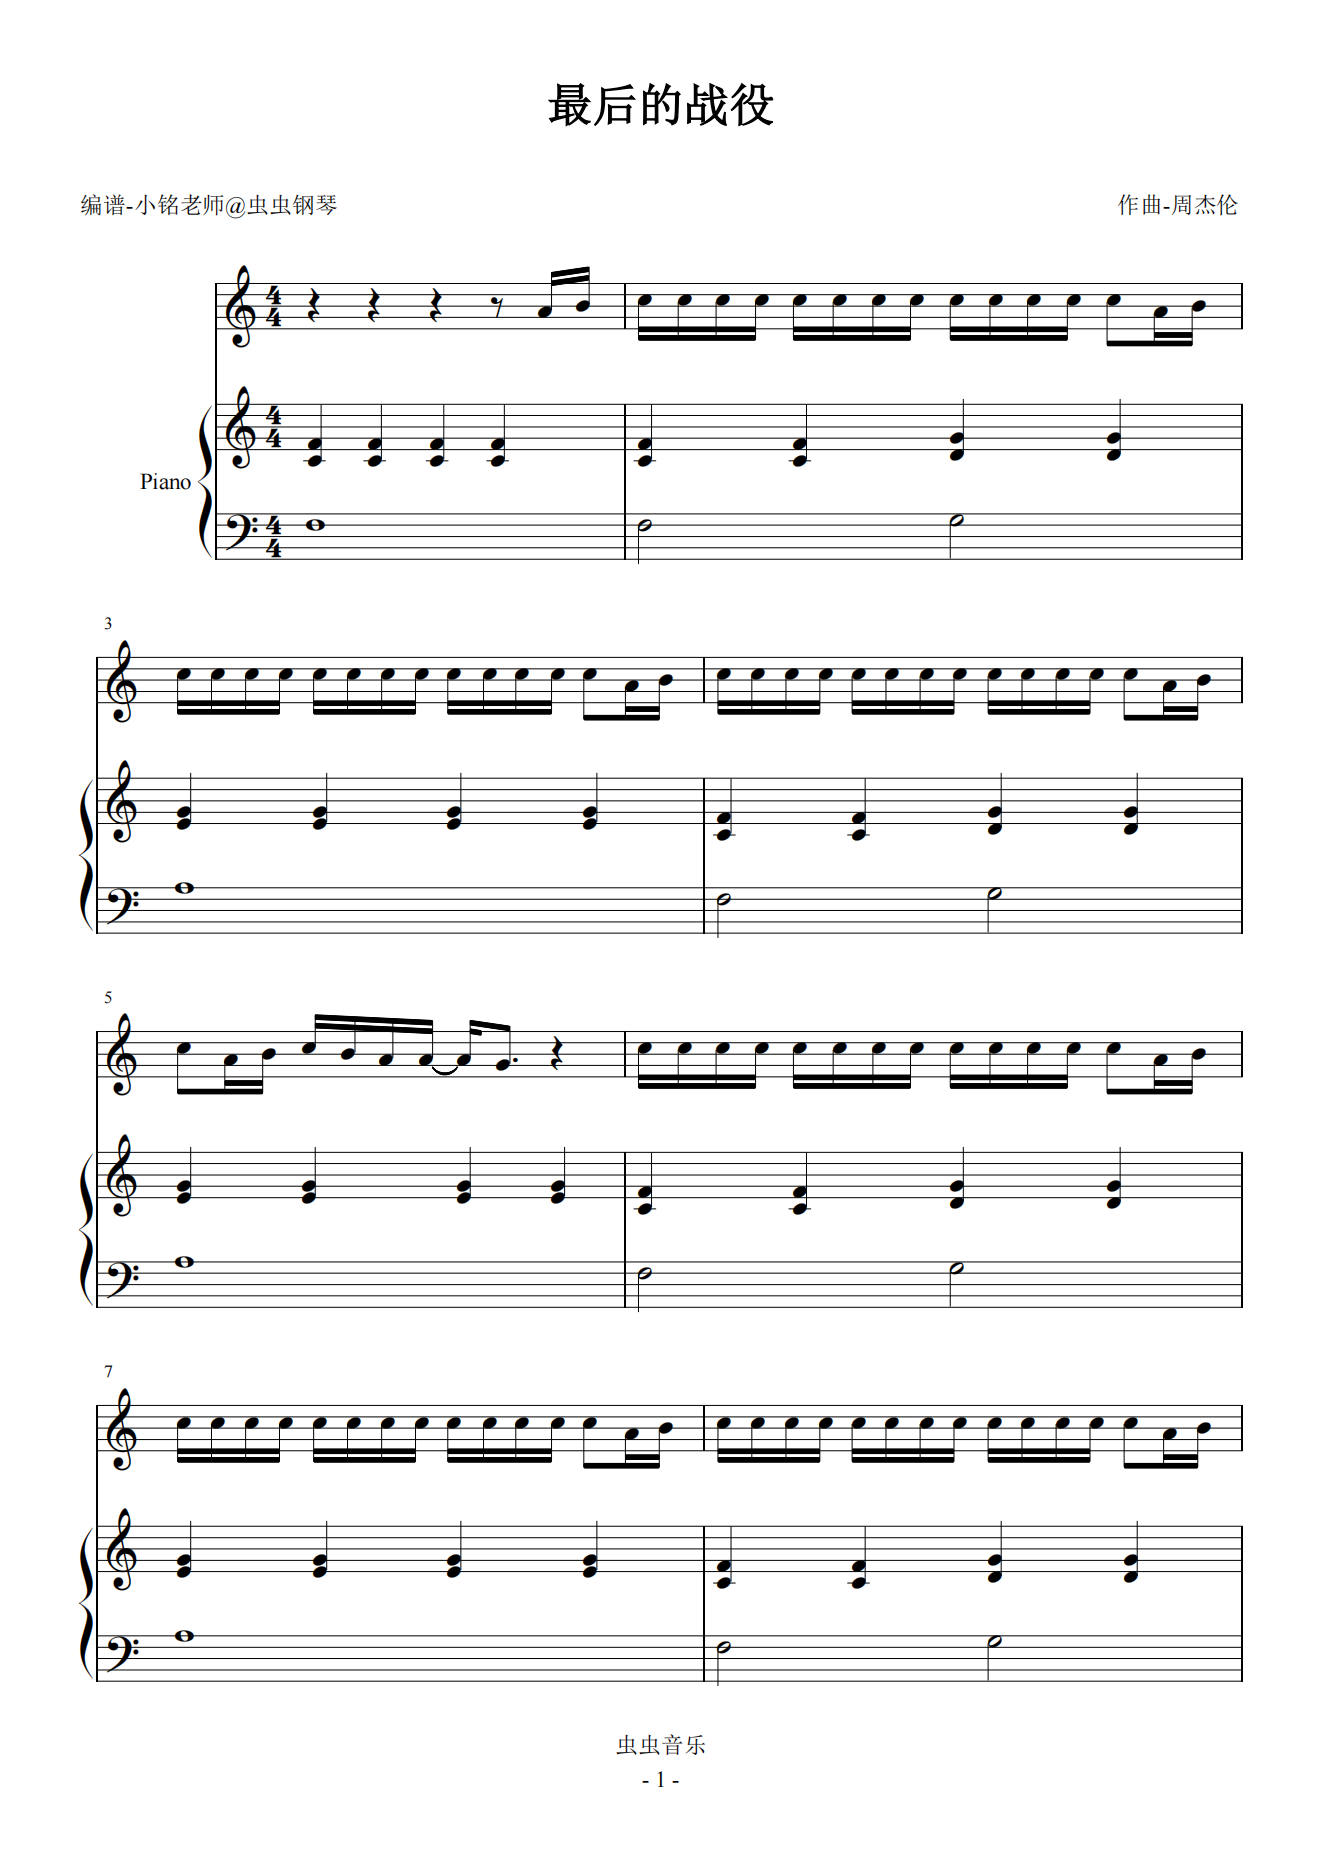 最后的战役-周杰伦双手简谱预览1-钢琴谱文件（五线谱、双手简谱、数字谱、Midi、PDF）免费下载